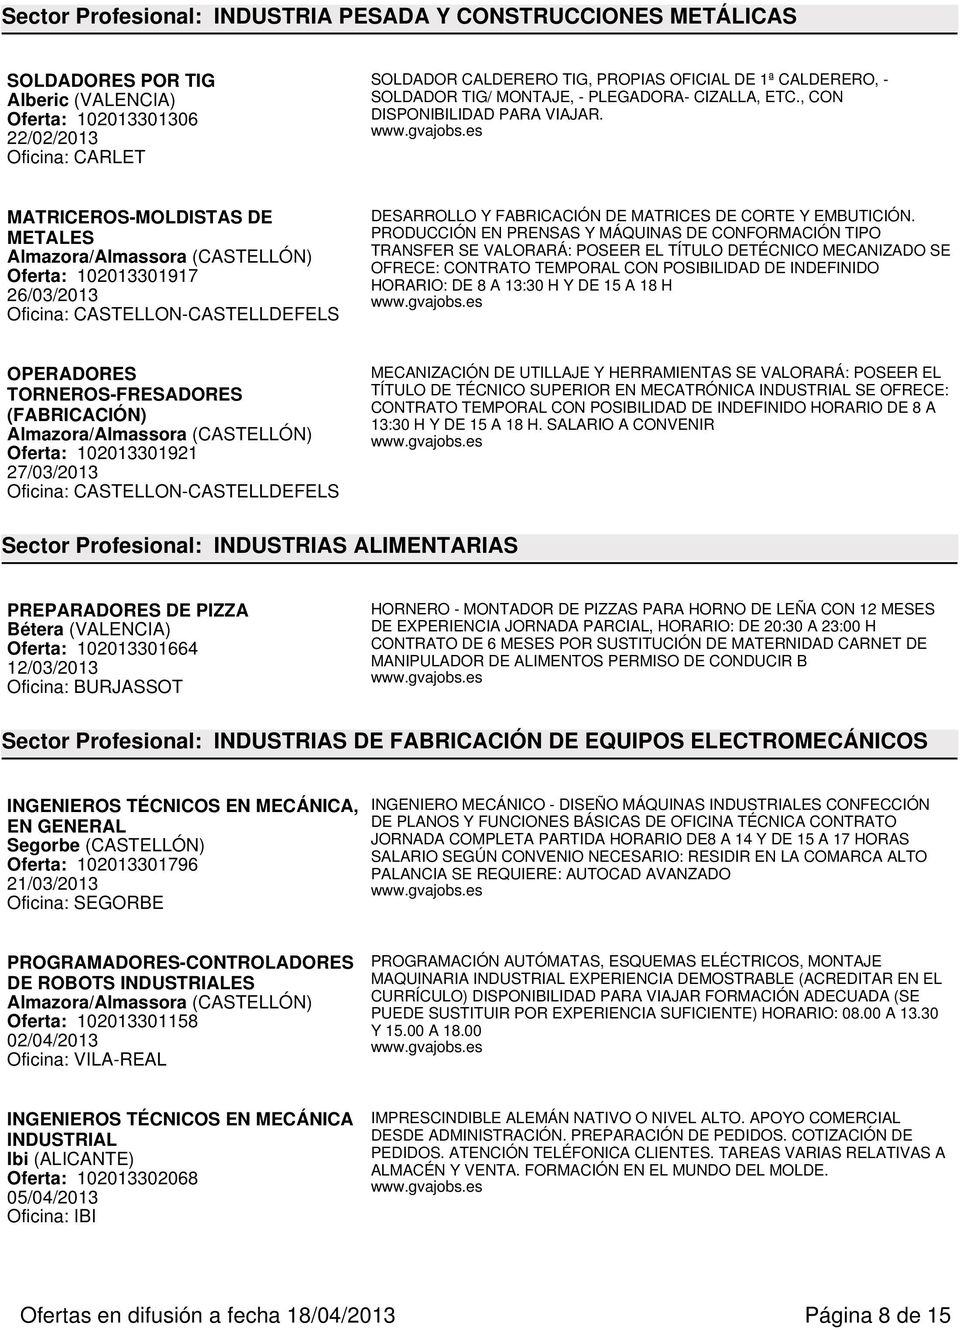 MATRICEROS-MOLDISTAS DE METALES Almazora/Almassora Oferta: 102013301917 26/03/2013 DESARROLLO Y FABRICACIÓN DE MATRICES DE CORTE Y EMBUTICIÓN.